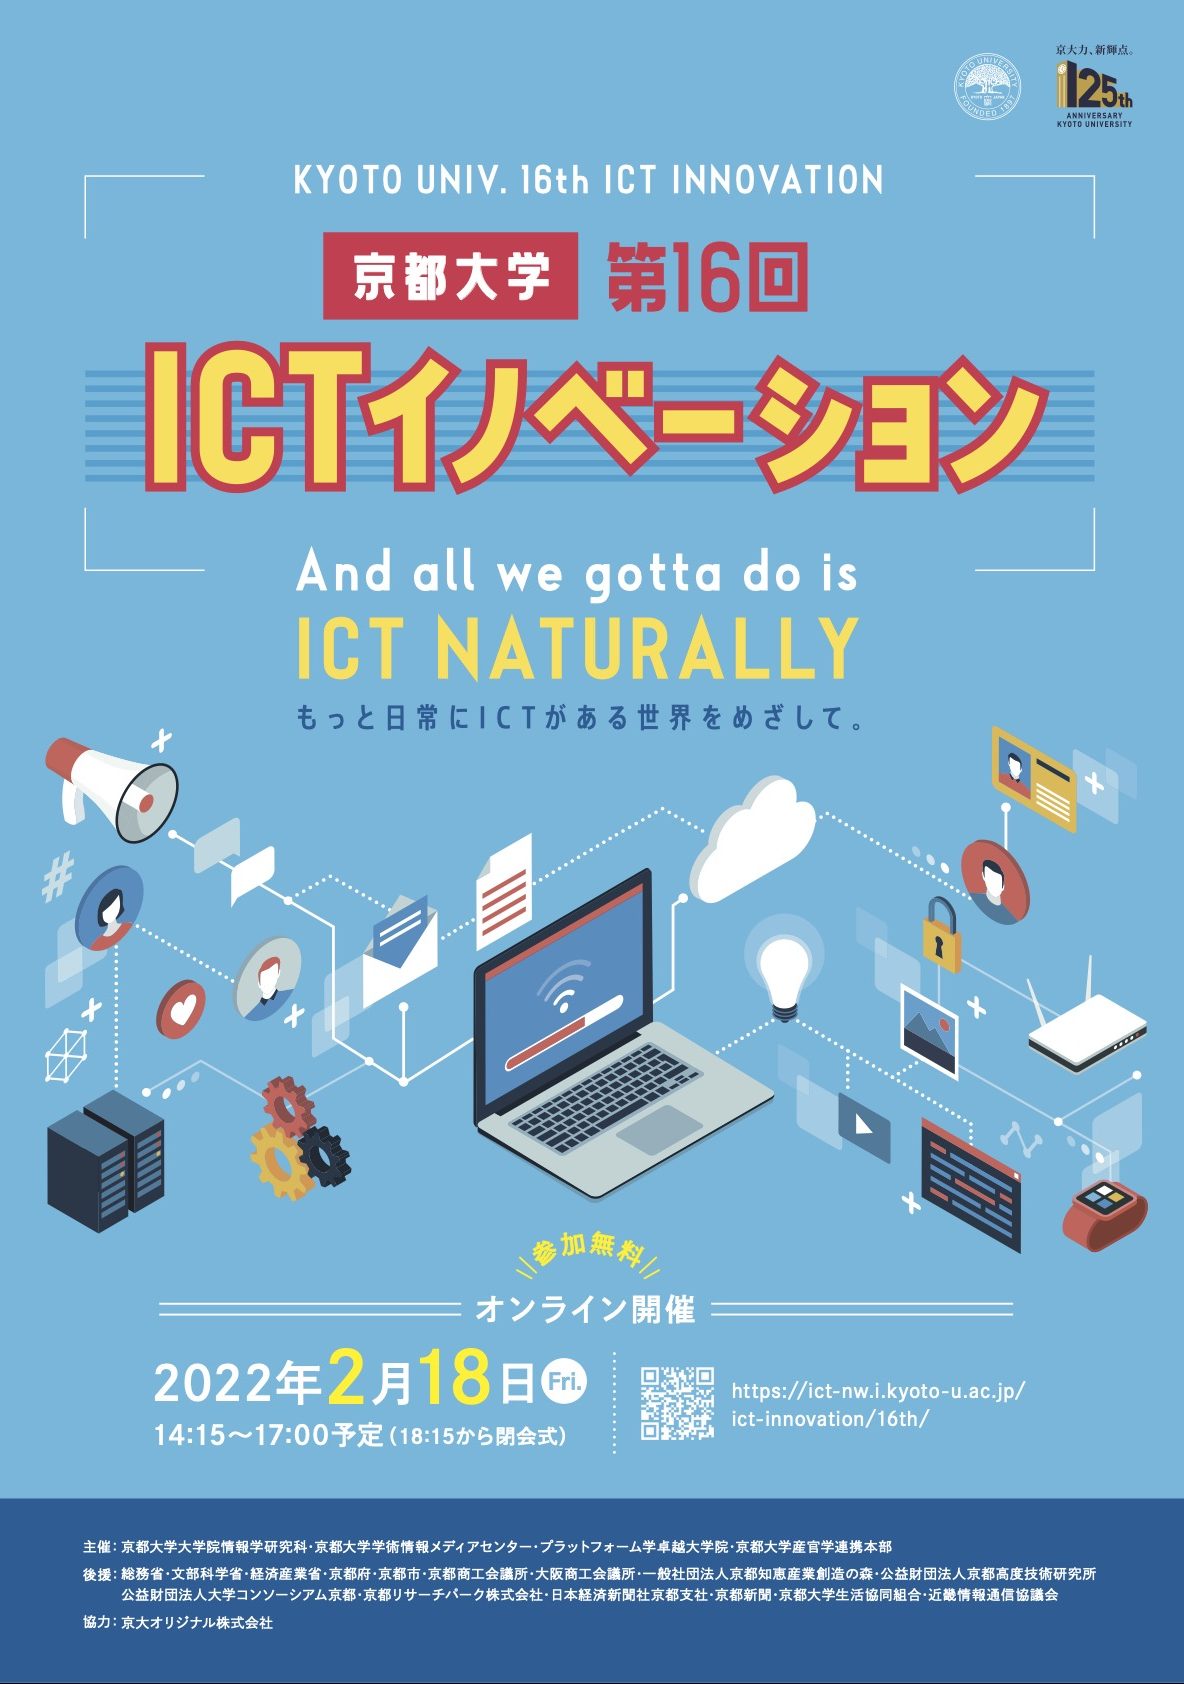 【2022年2月18日】京都大学第16回ICTイノベーションを開催しました